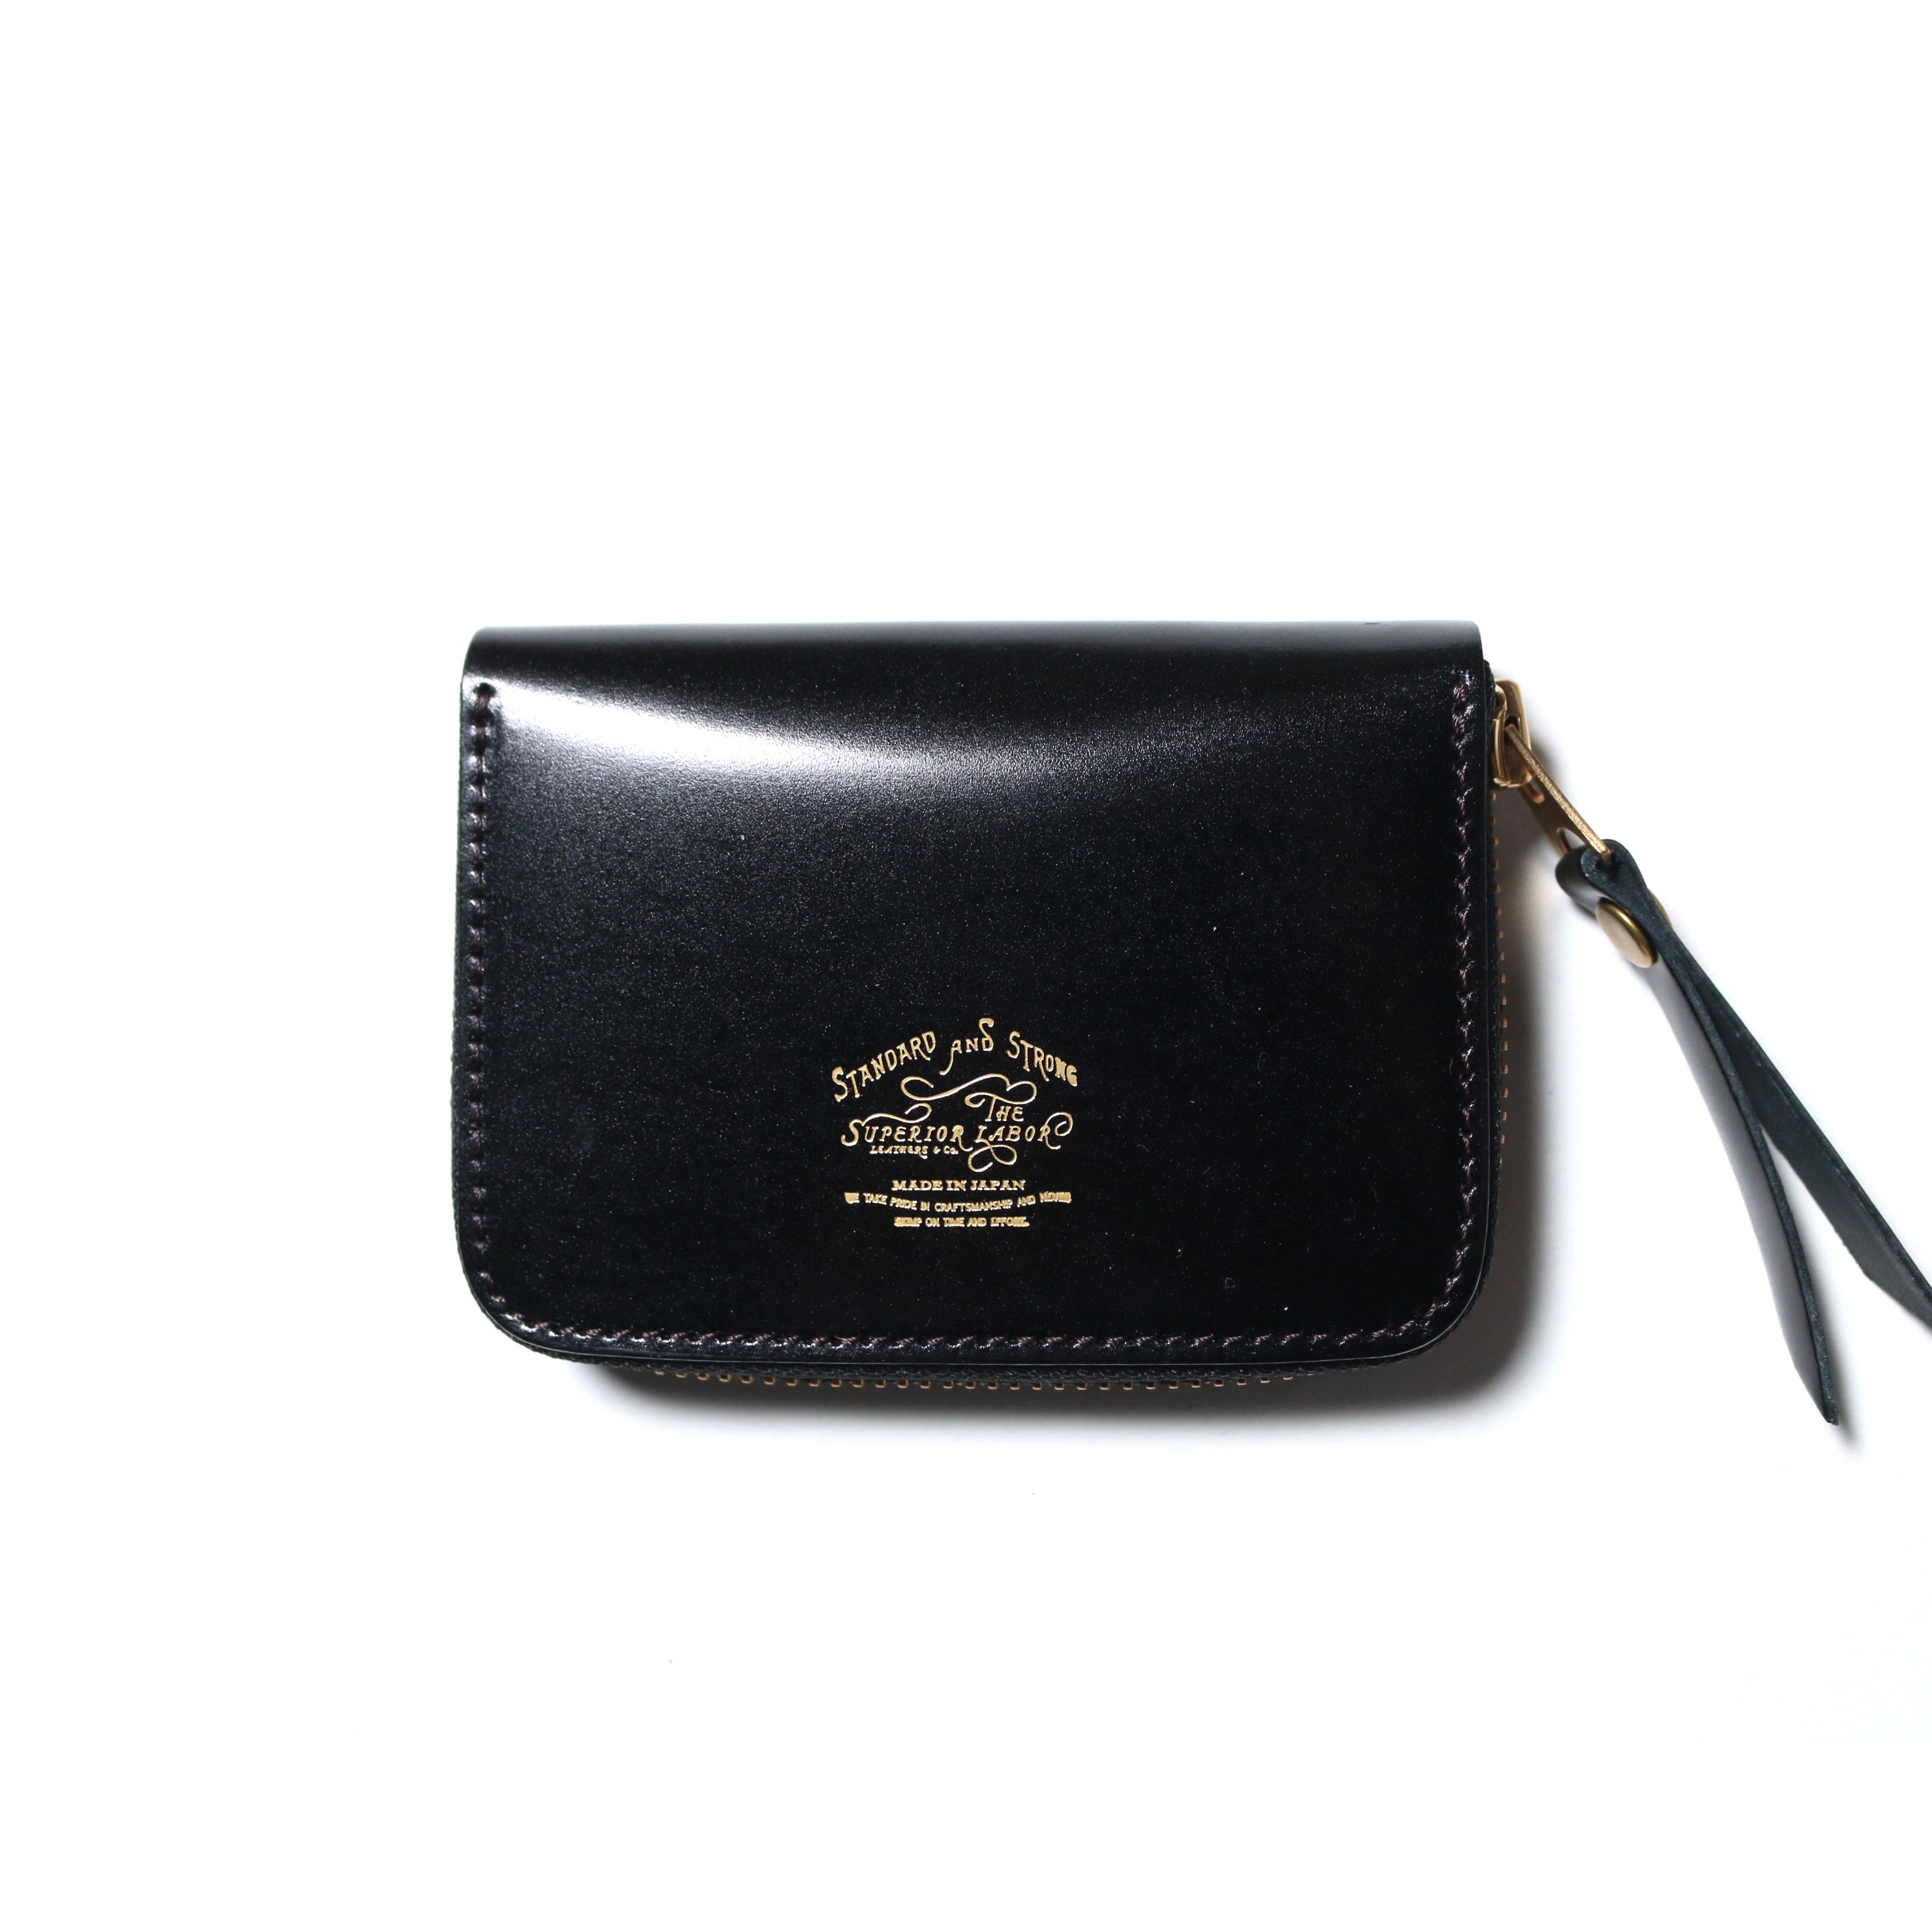 SL193 cordovan zip small wallet